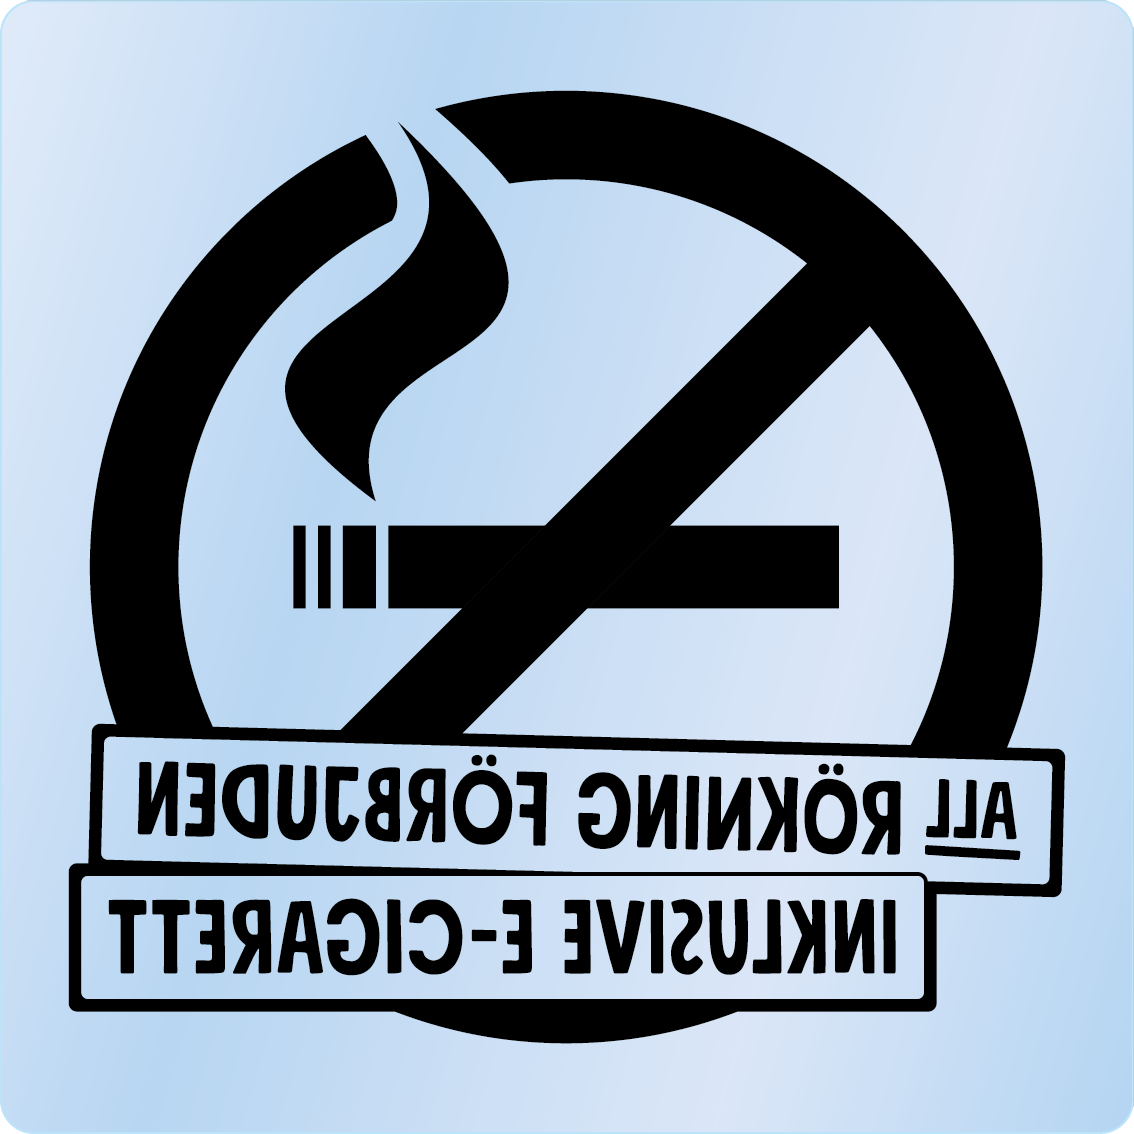 Bild rökförbudsskylt 02A13: Svart / Transparent